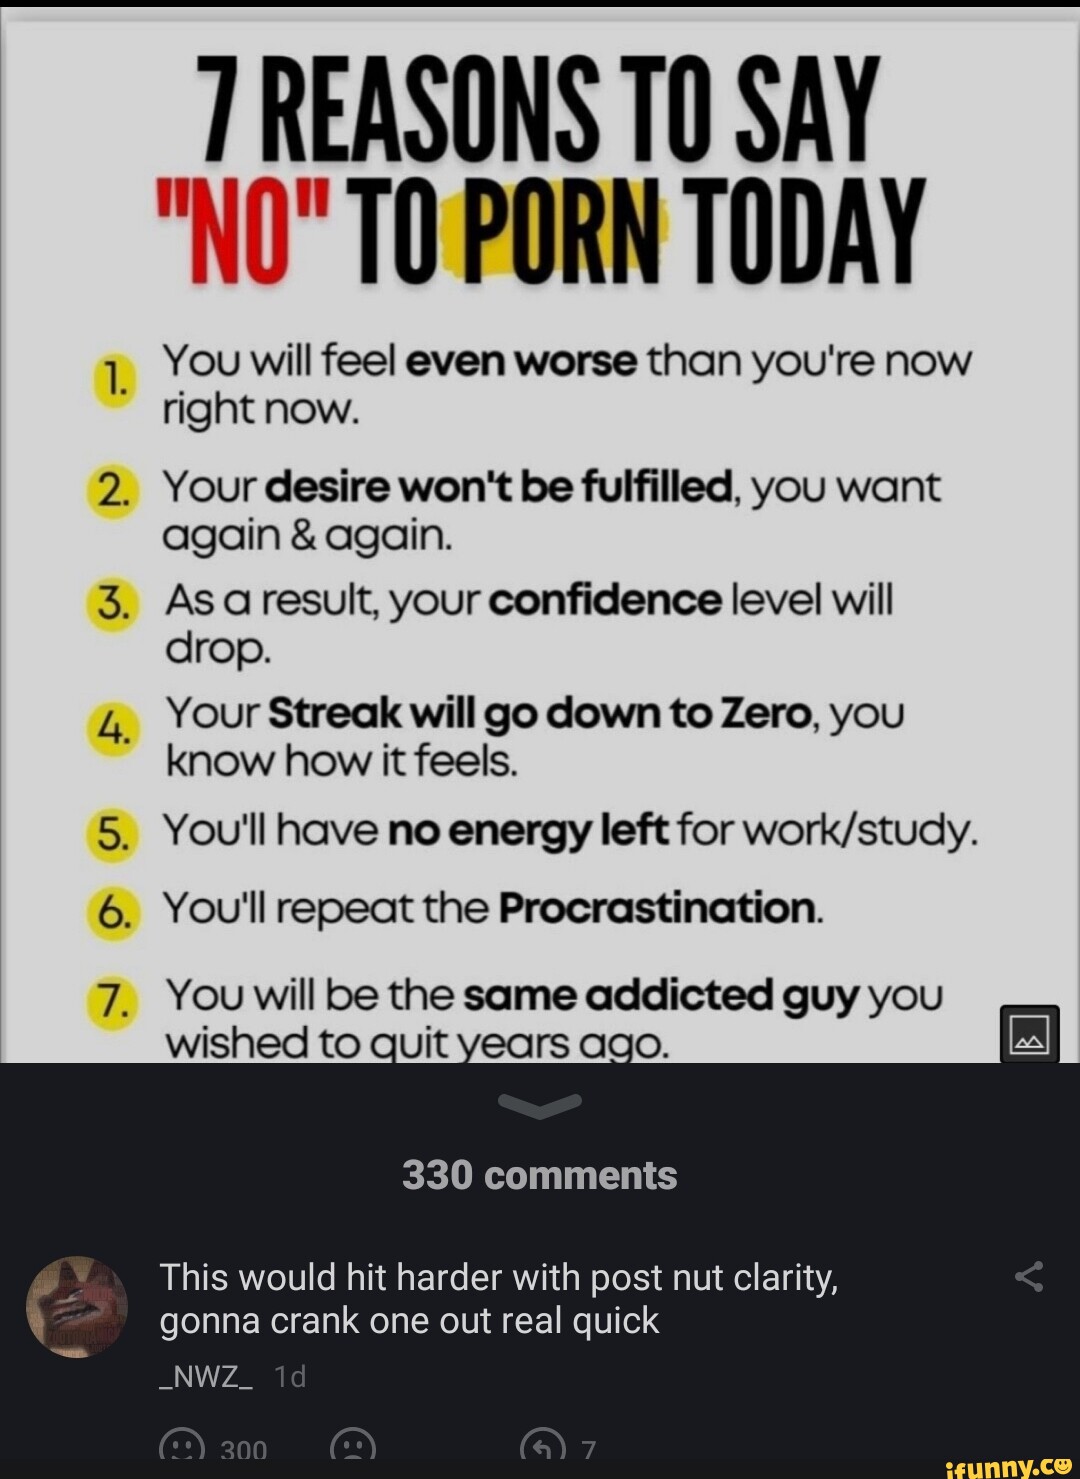 I said no porn